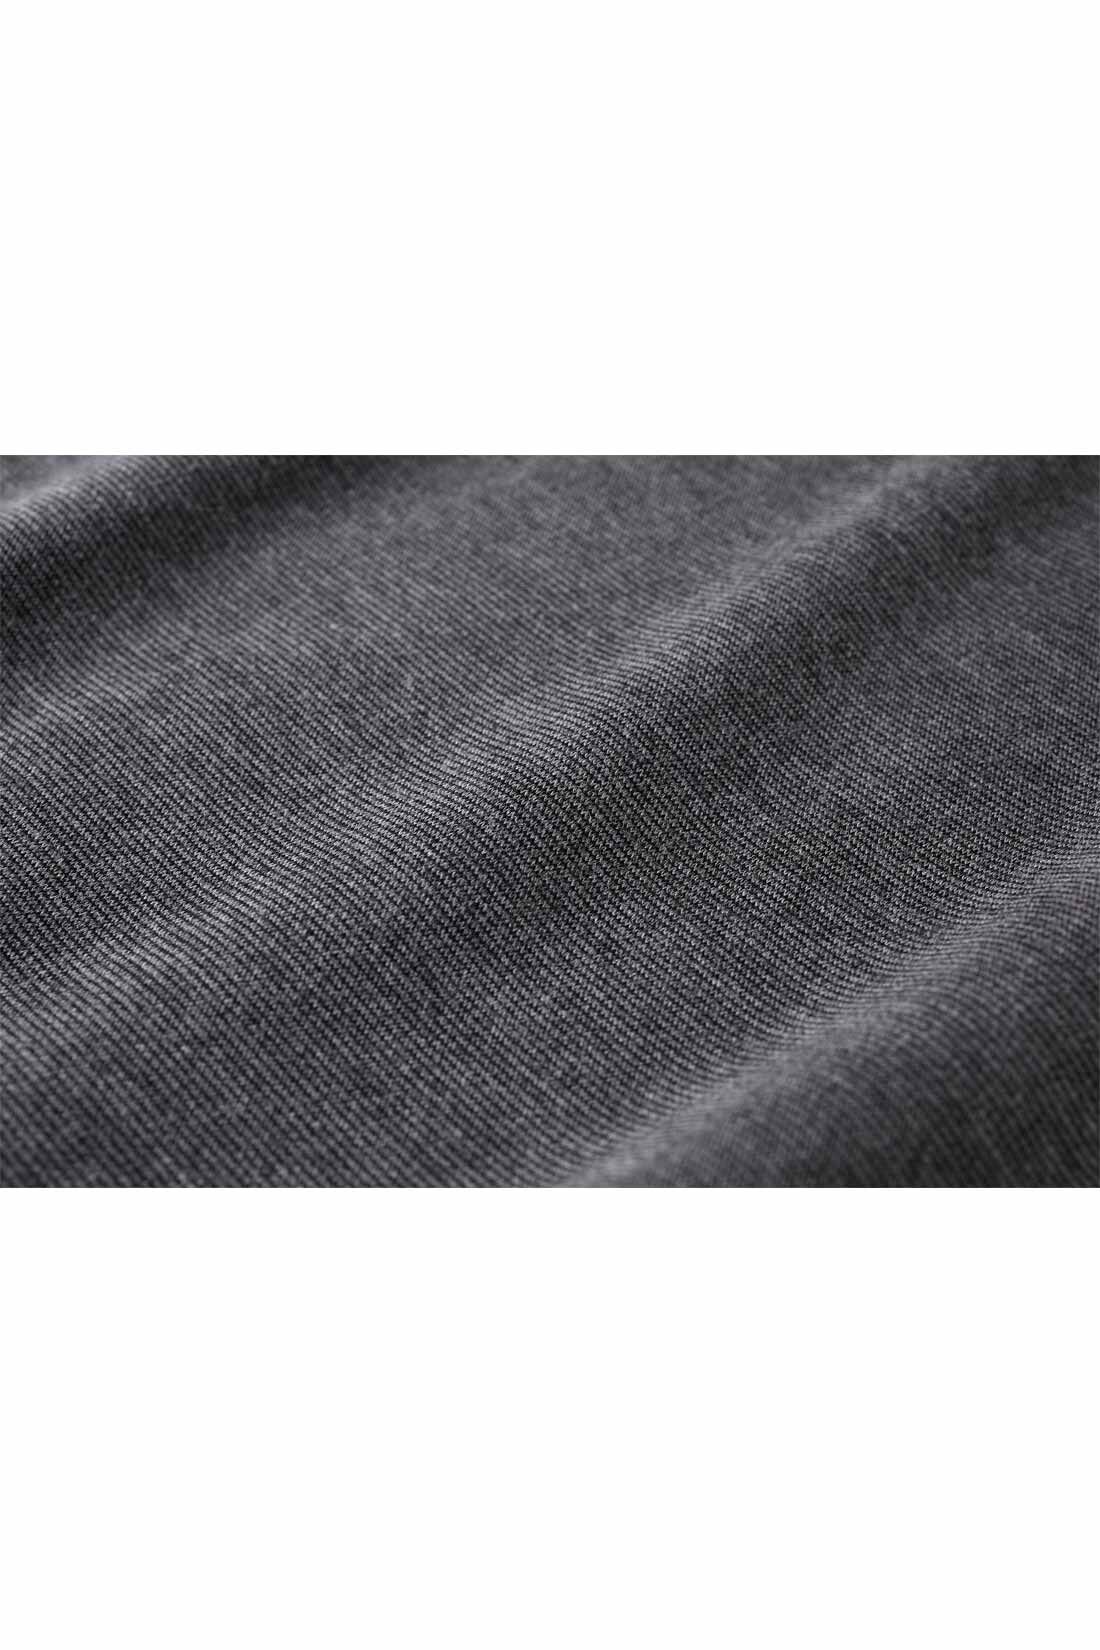 IEDIT|IEDIT[イディット] 前後2‐WAYで着られる Aラインカットソーワンピース〈ブラック〉|ほどよい厚みときれいな表面感が高見えするリッチ感のある素材。